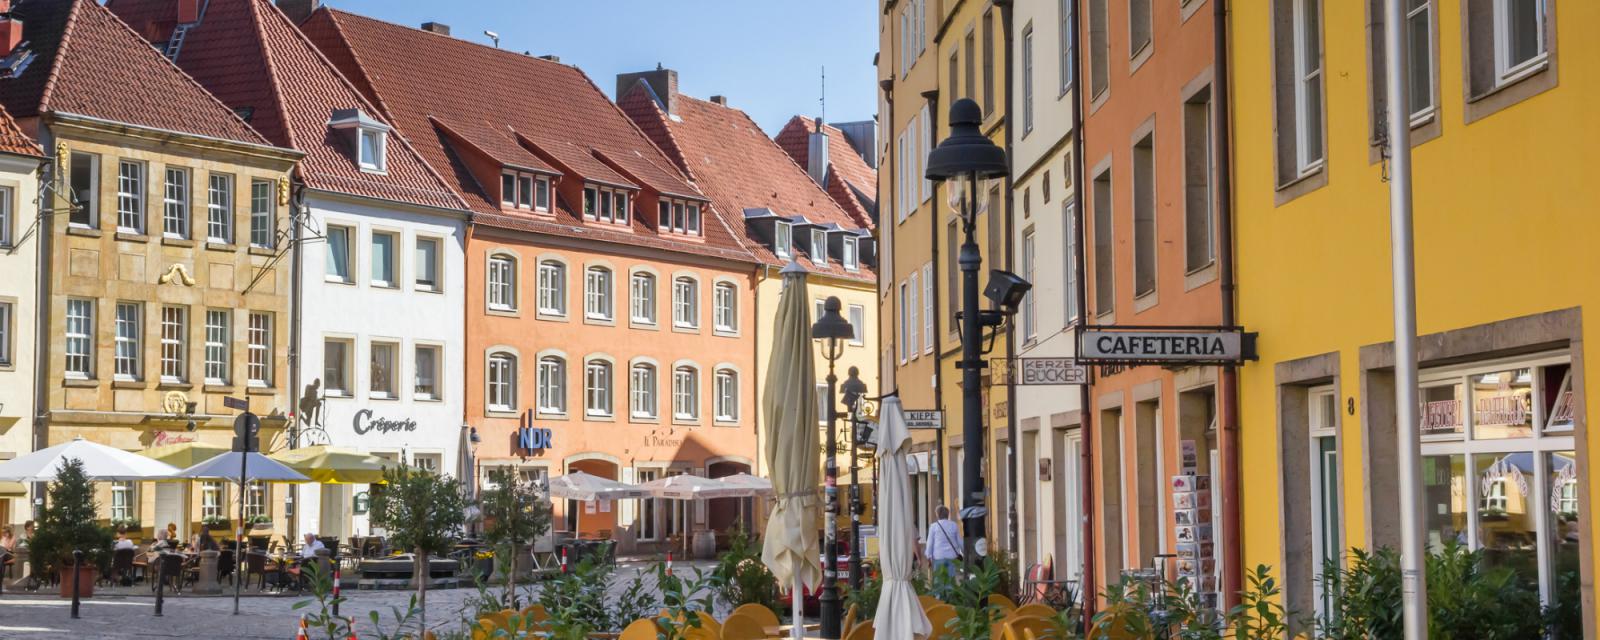 Ontdek het historische Osnabrück te voet met deze wandeltour 